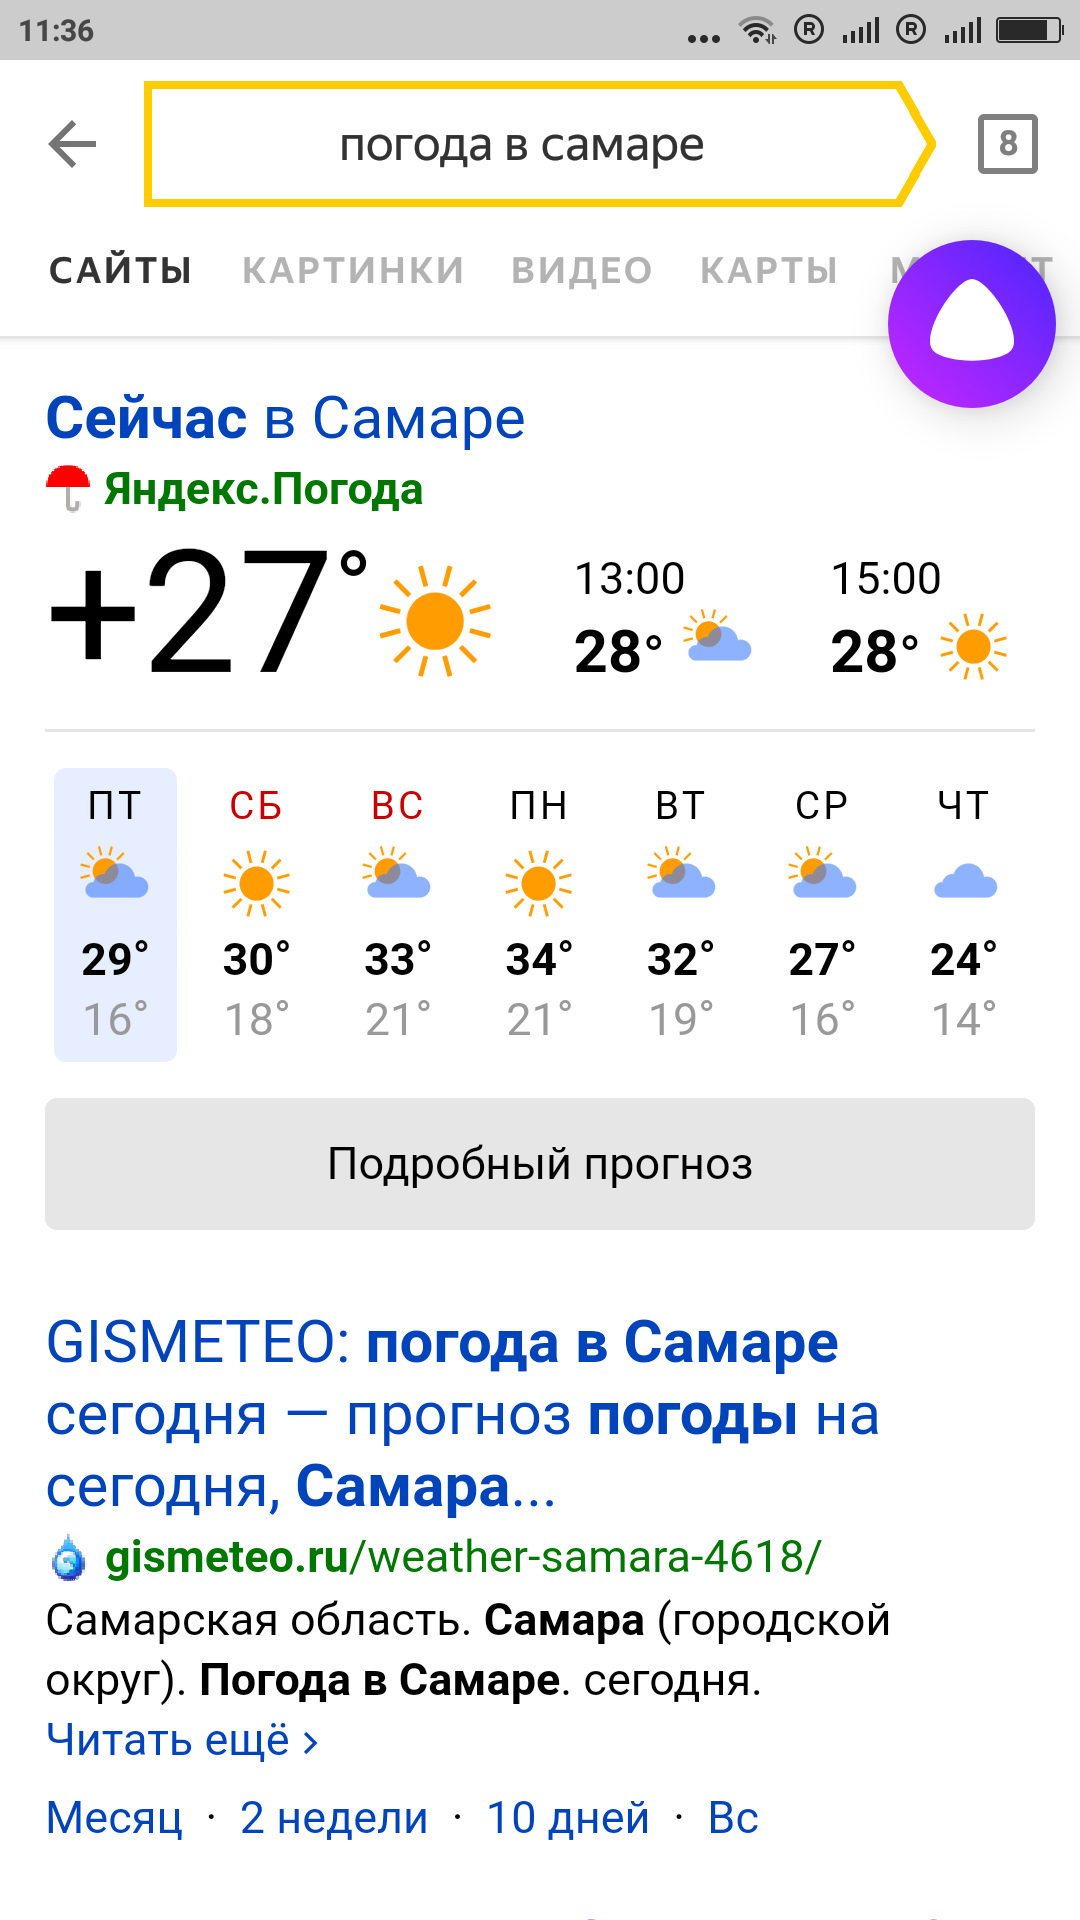 Погода тольятти на неделю самый точный прогноз